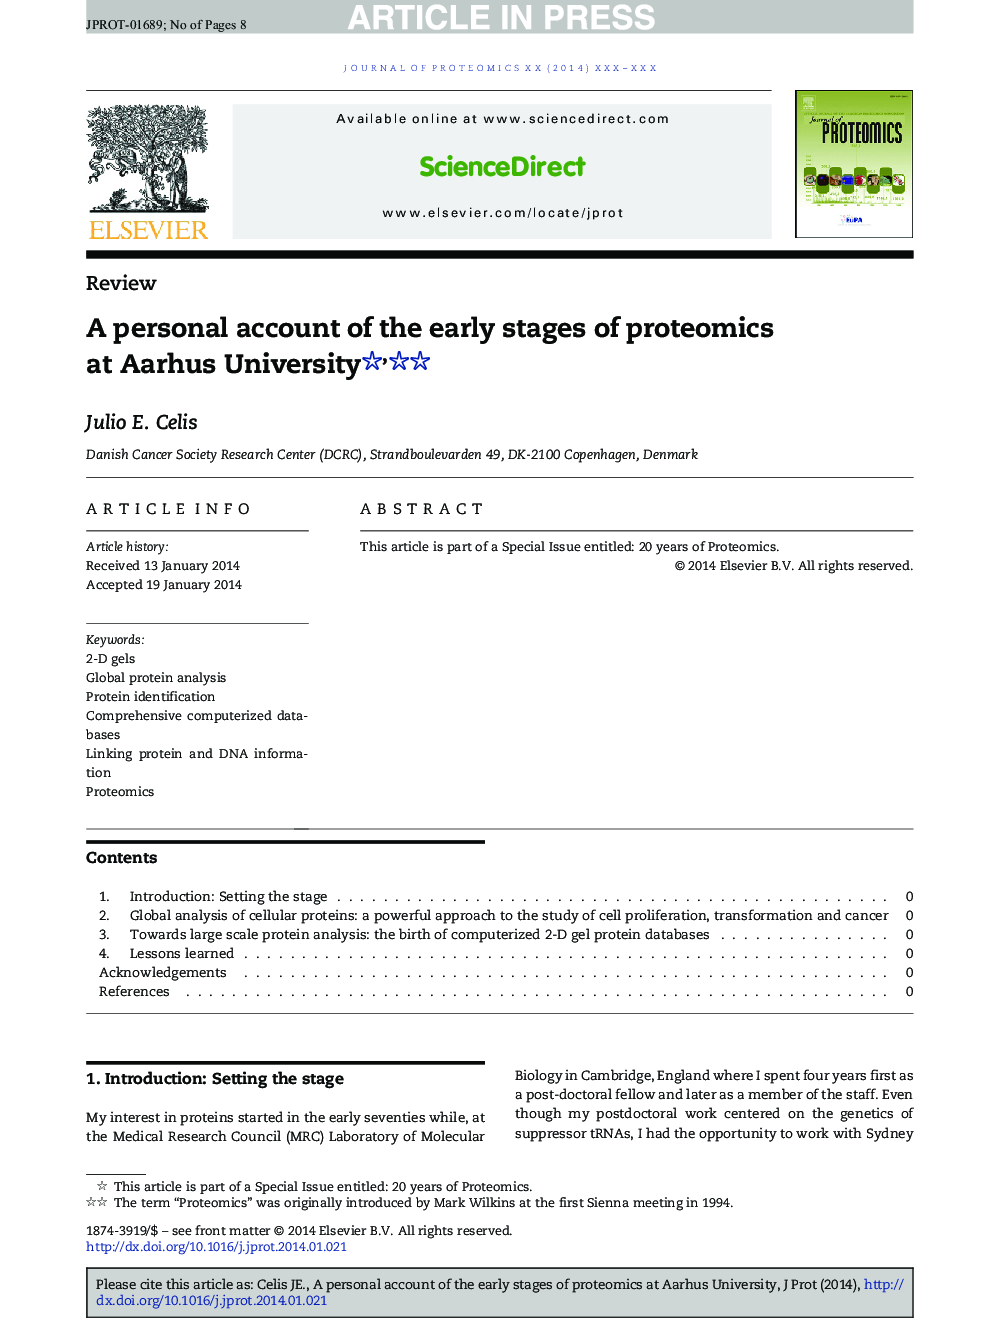 یک گزارش شخصی از مراحل اولیه پروتئومیک در دانشگاه اوهوش 